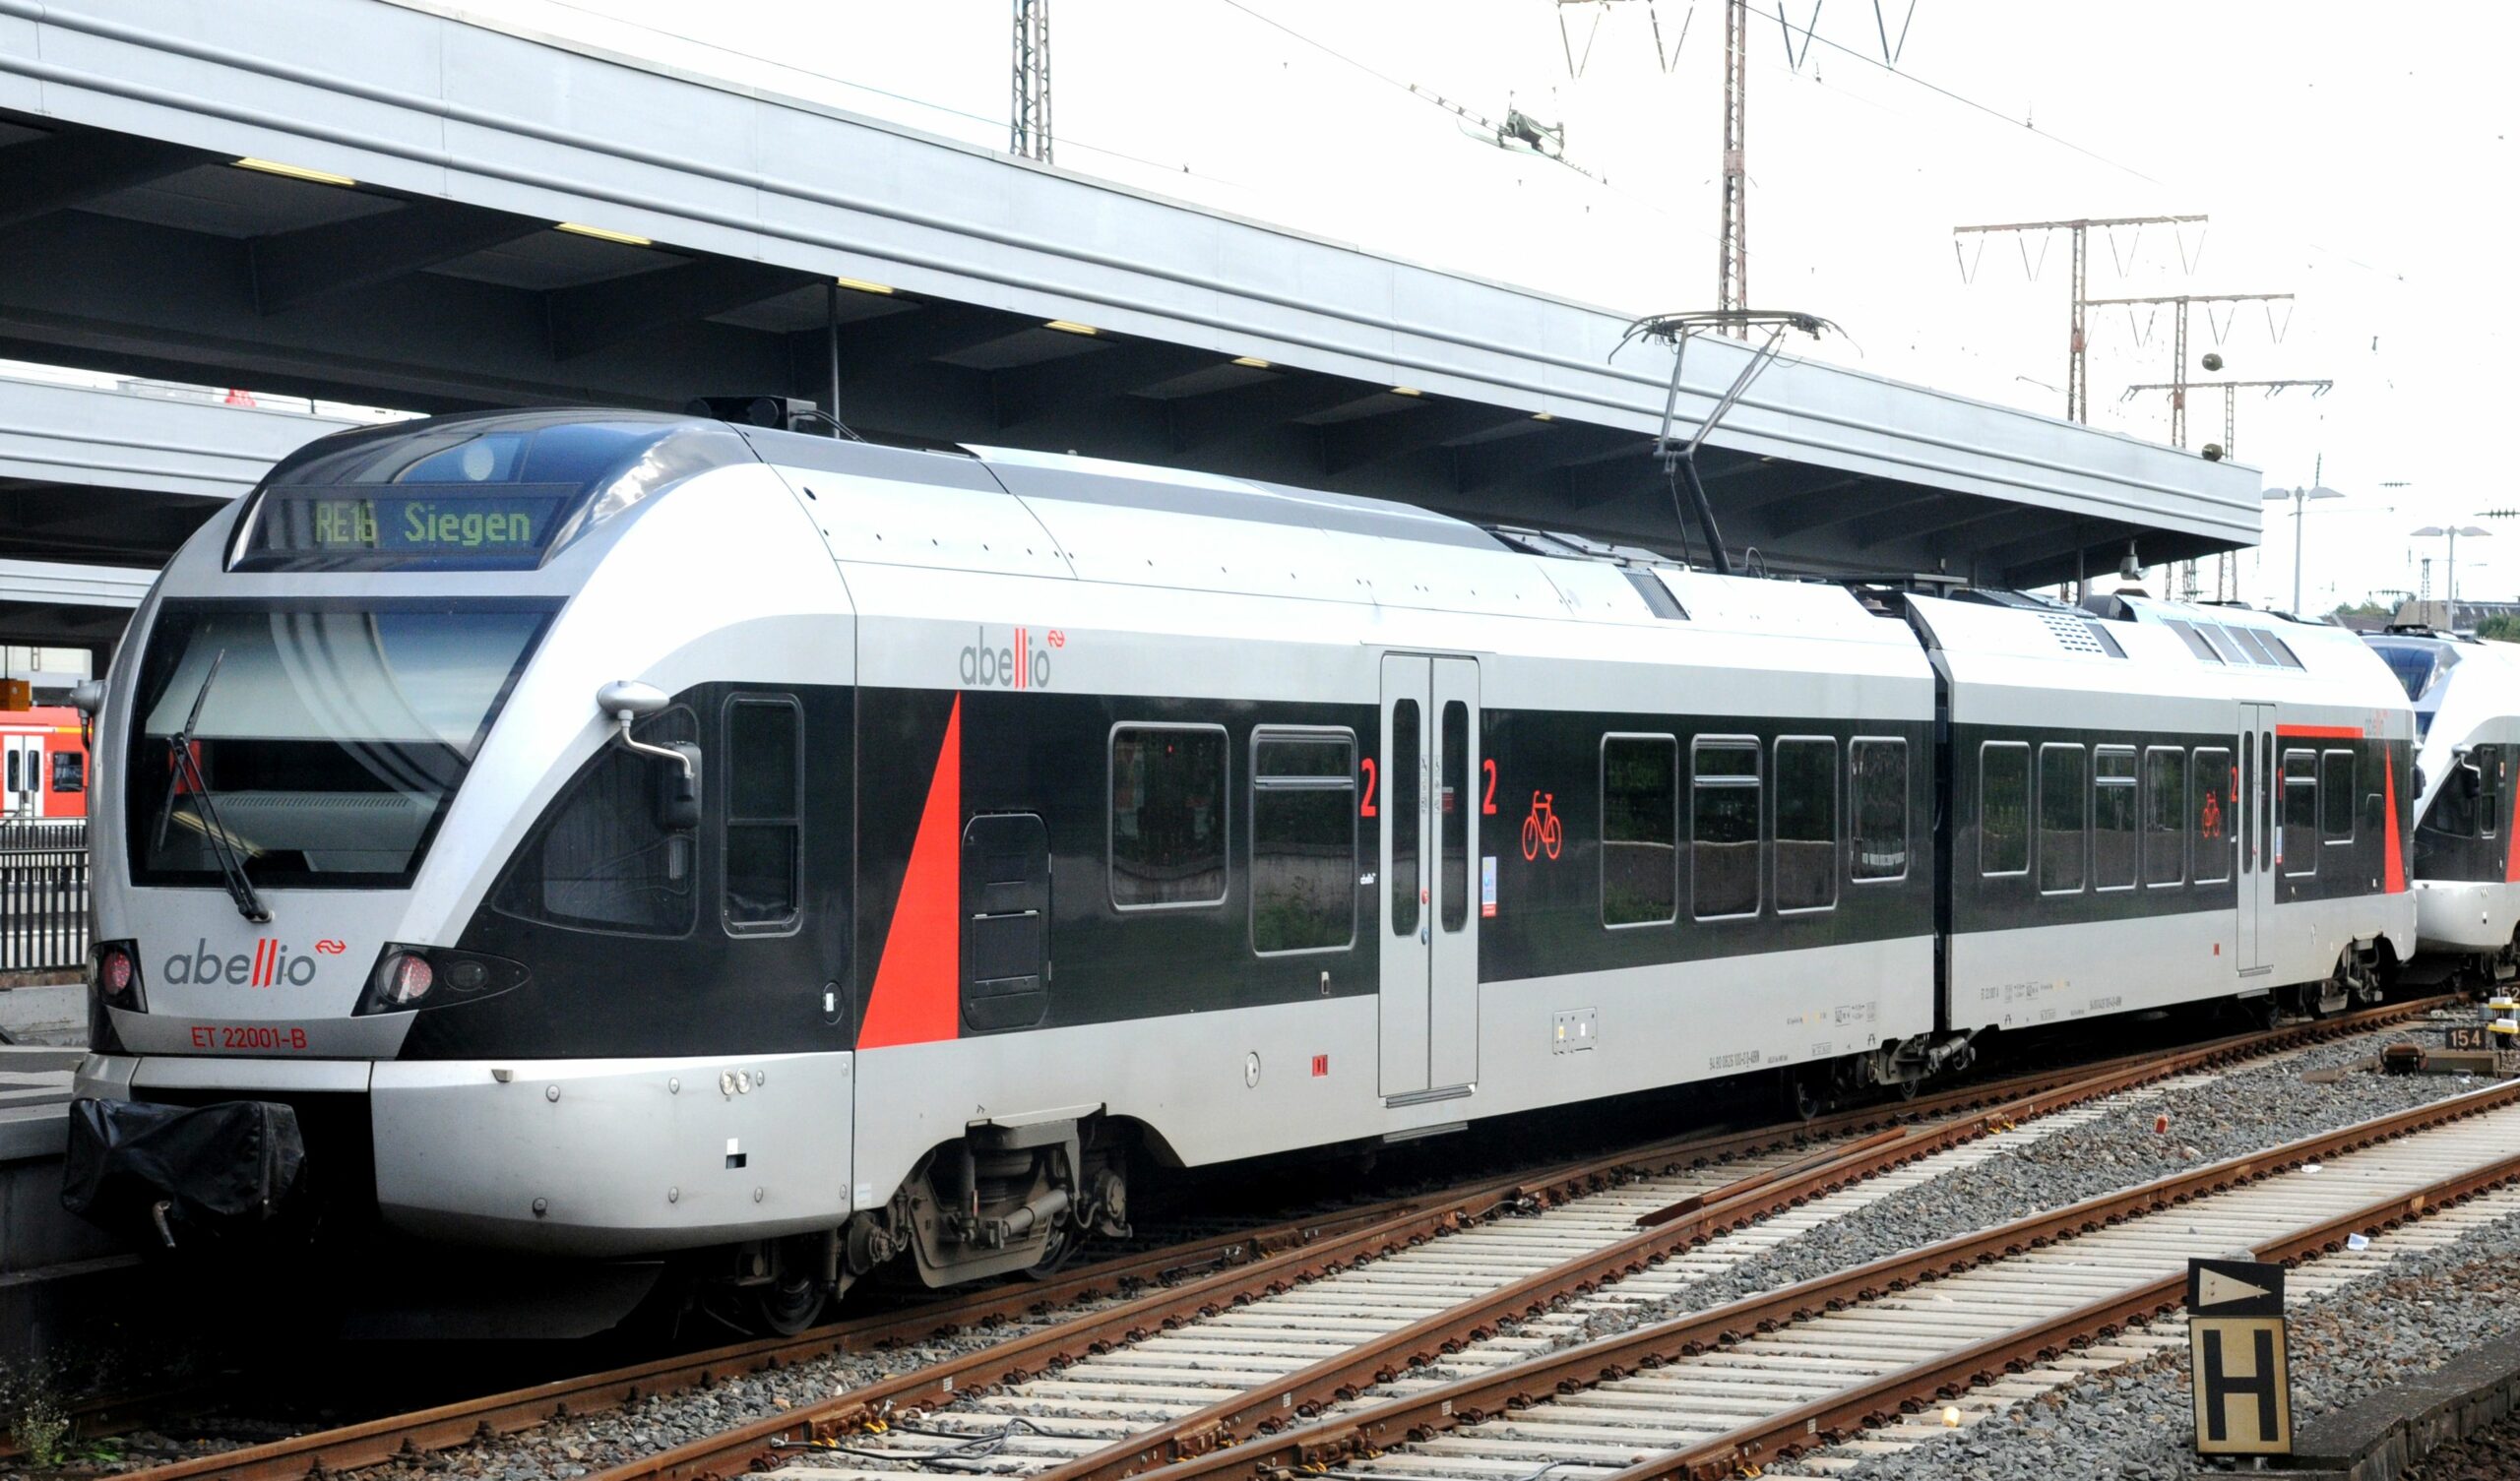 010302 Abellio scaled - Absehbar - Abellio Rail NRW, Bahnprivatisierung, Pleite - Wirtschaft & Soziales